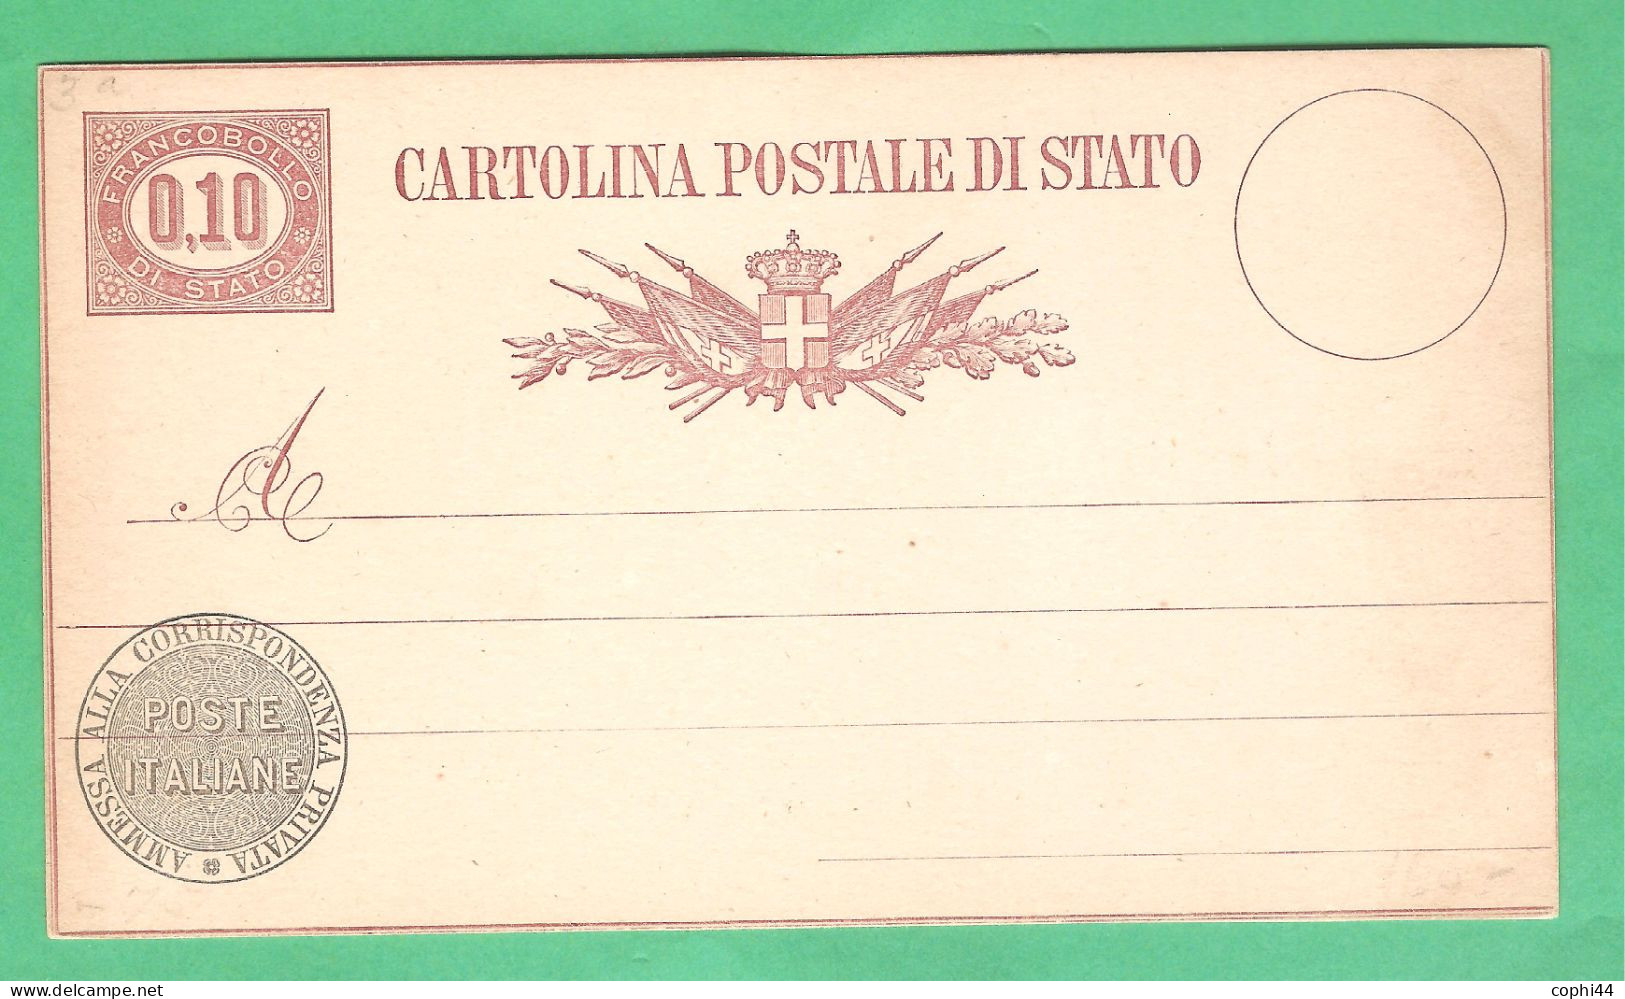 REGNO D'ITALIA 1877 VEII CARTOLINA POSTALE SERVIZIO DI STATO N. 3 Lire 0,10 NUOVA 2 FILETTI BUONE CONDIZIONI - Stamped Stationery